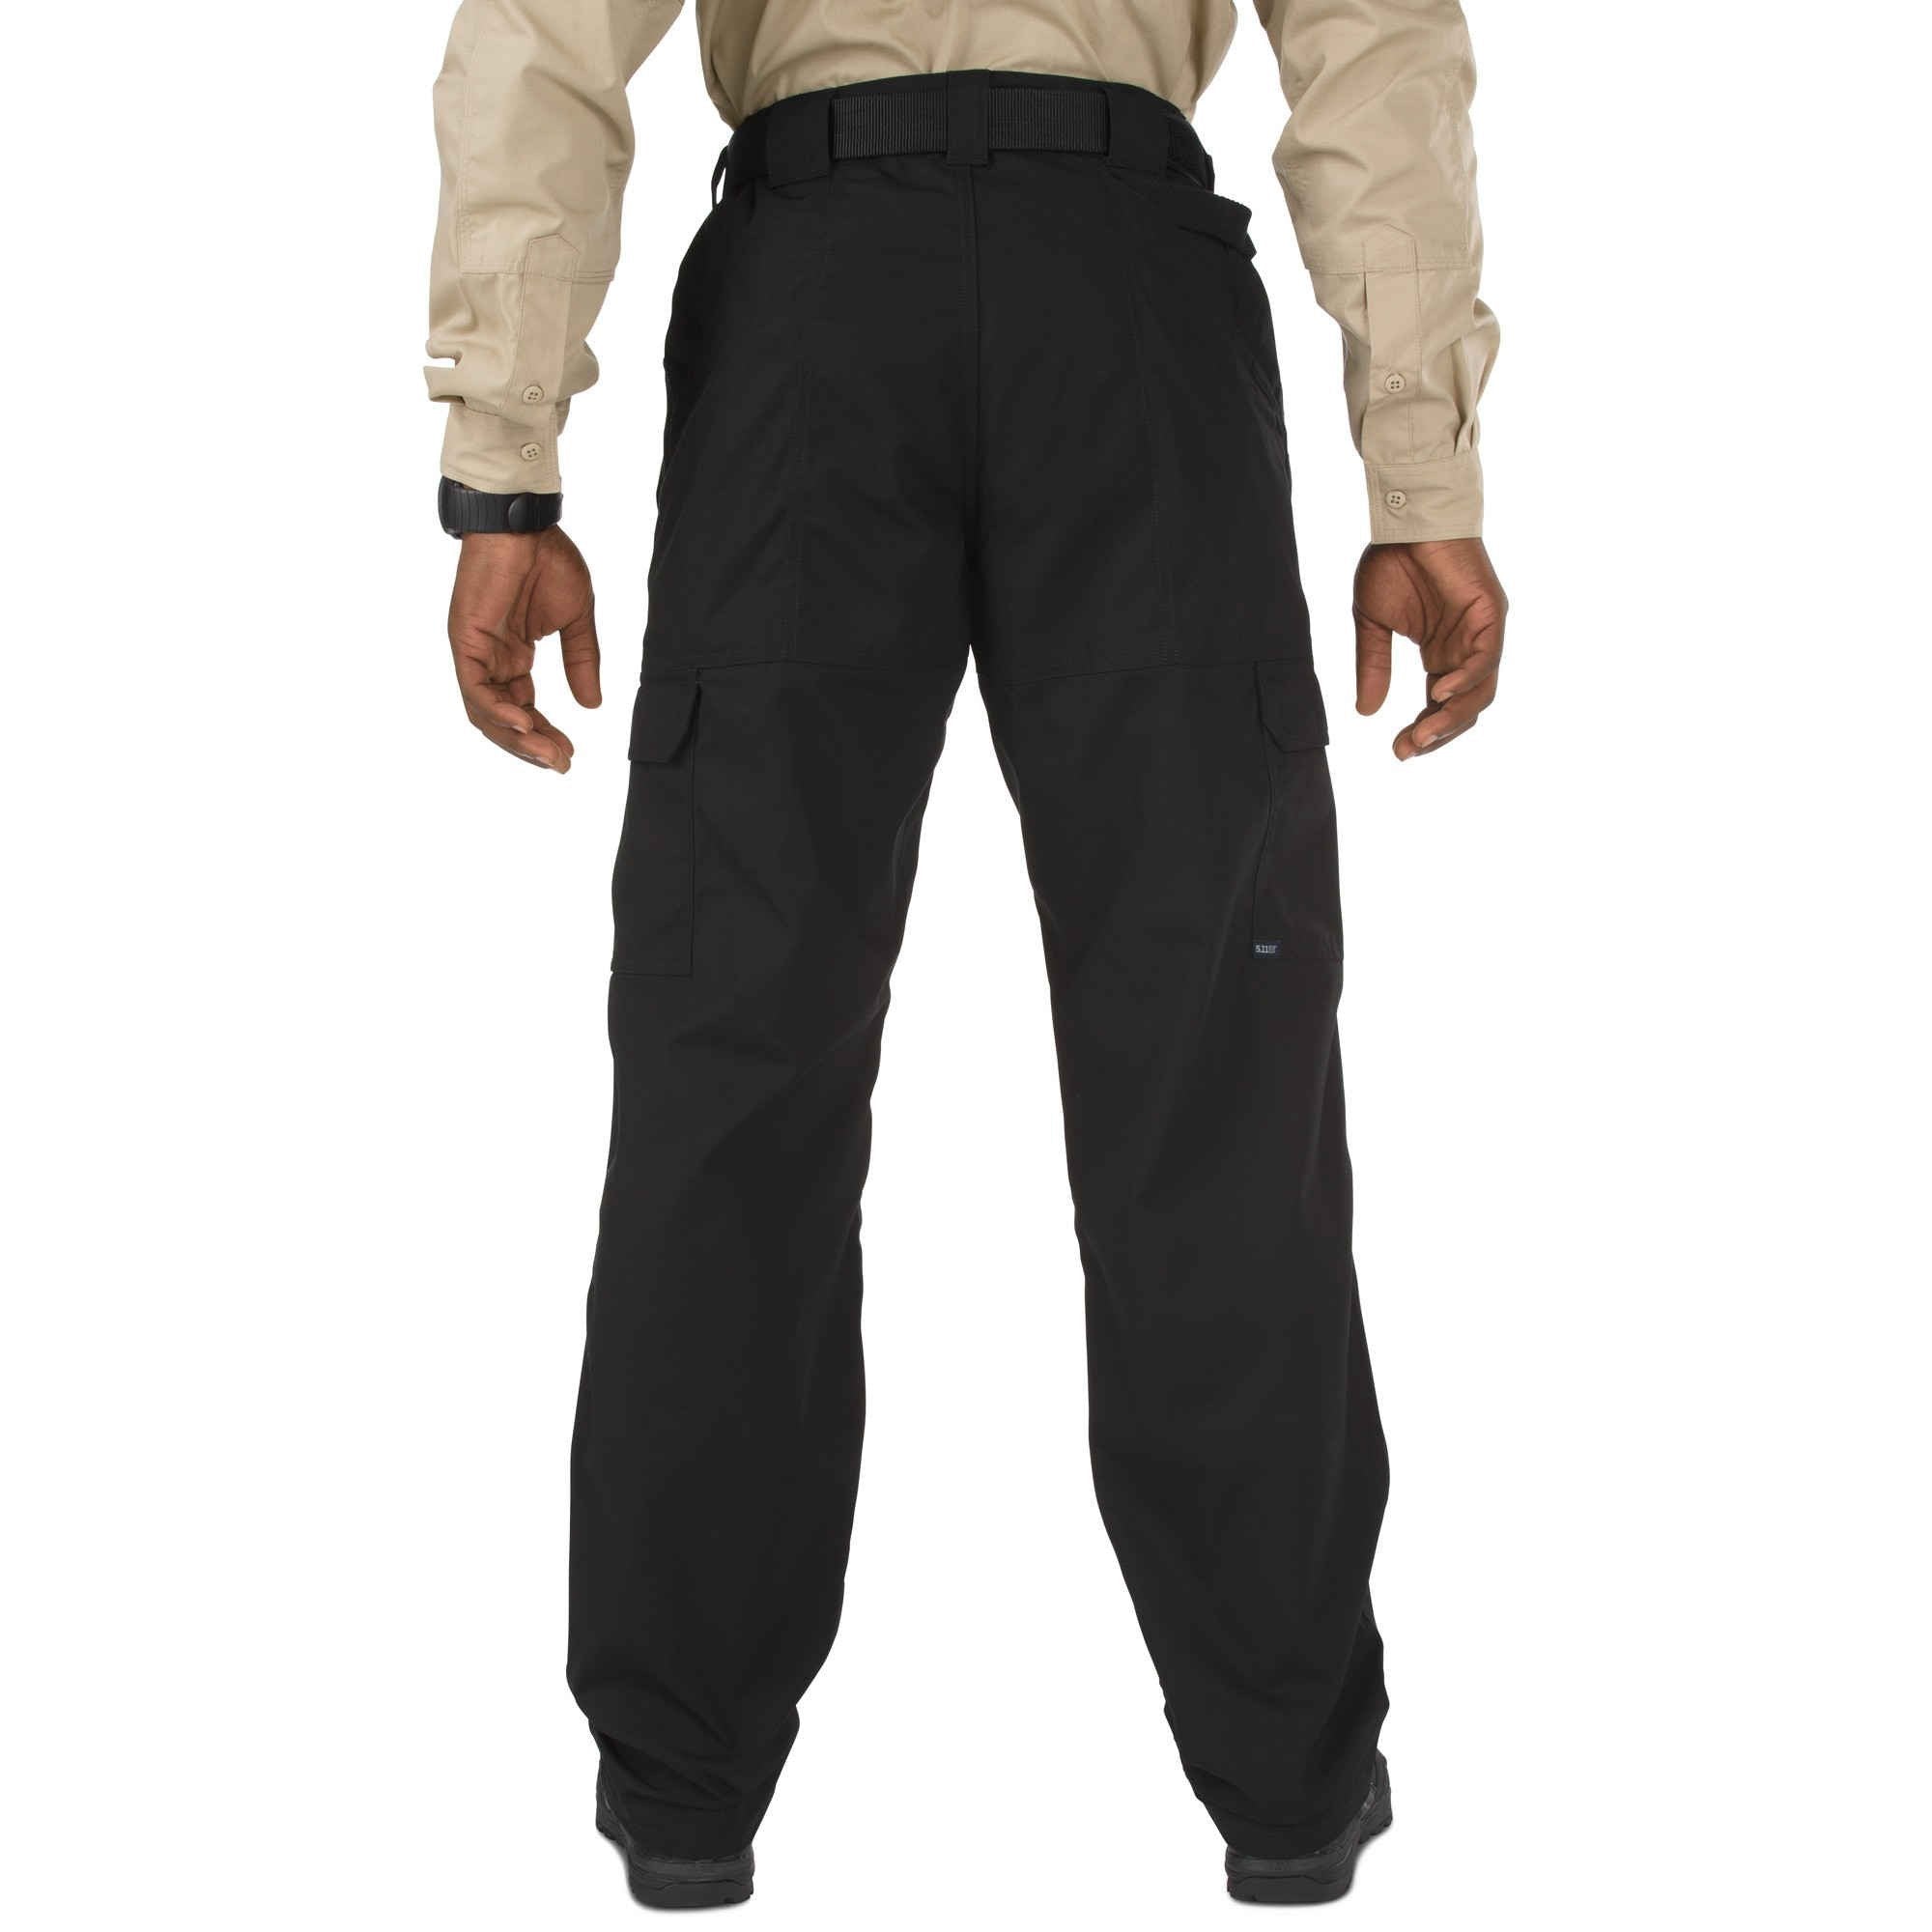 5.11 Tactical Taclite Pro Pants - Black Pants 5.11 Tactical Tactical Gear Supplier Tactical Distributors Australia